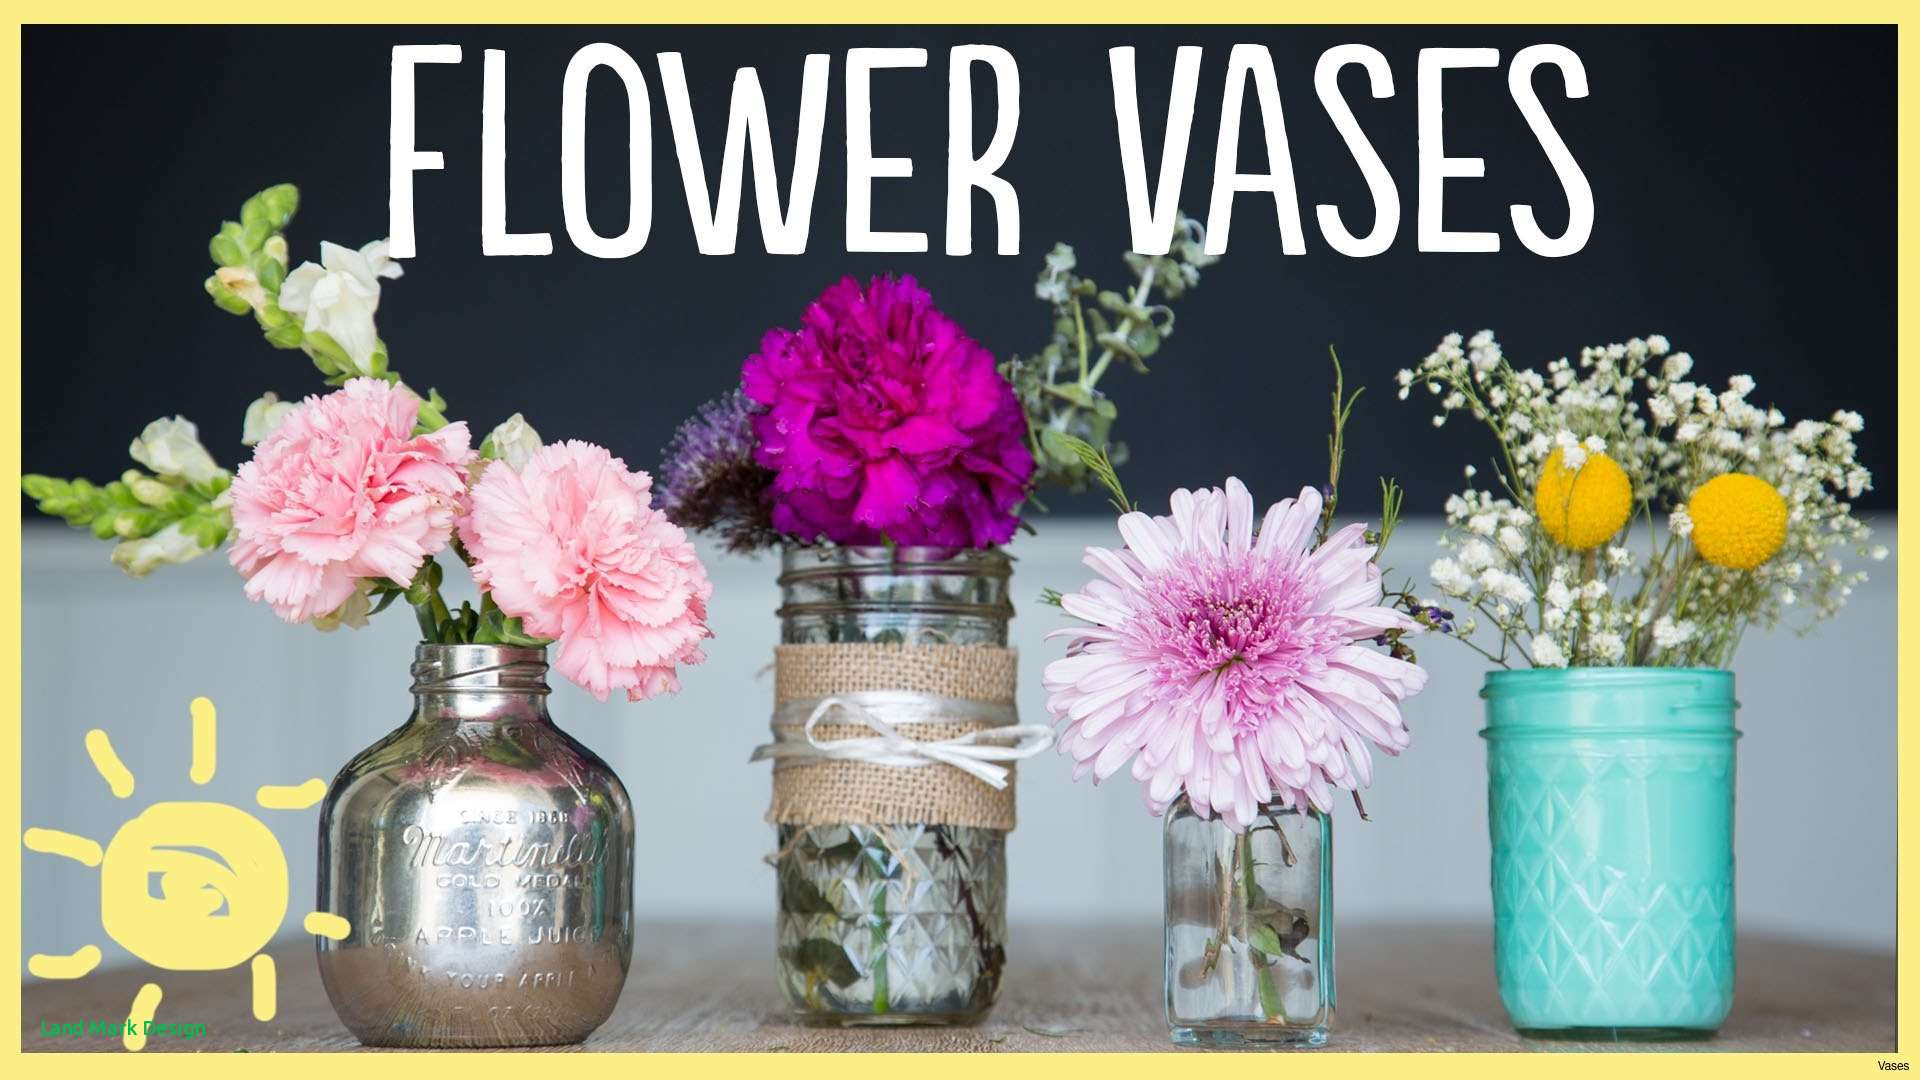 origami flower vase of diy flower vase home design throughout maxresdefaulth vases flower vase crafts i 0d